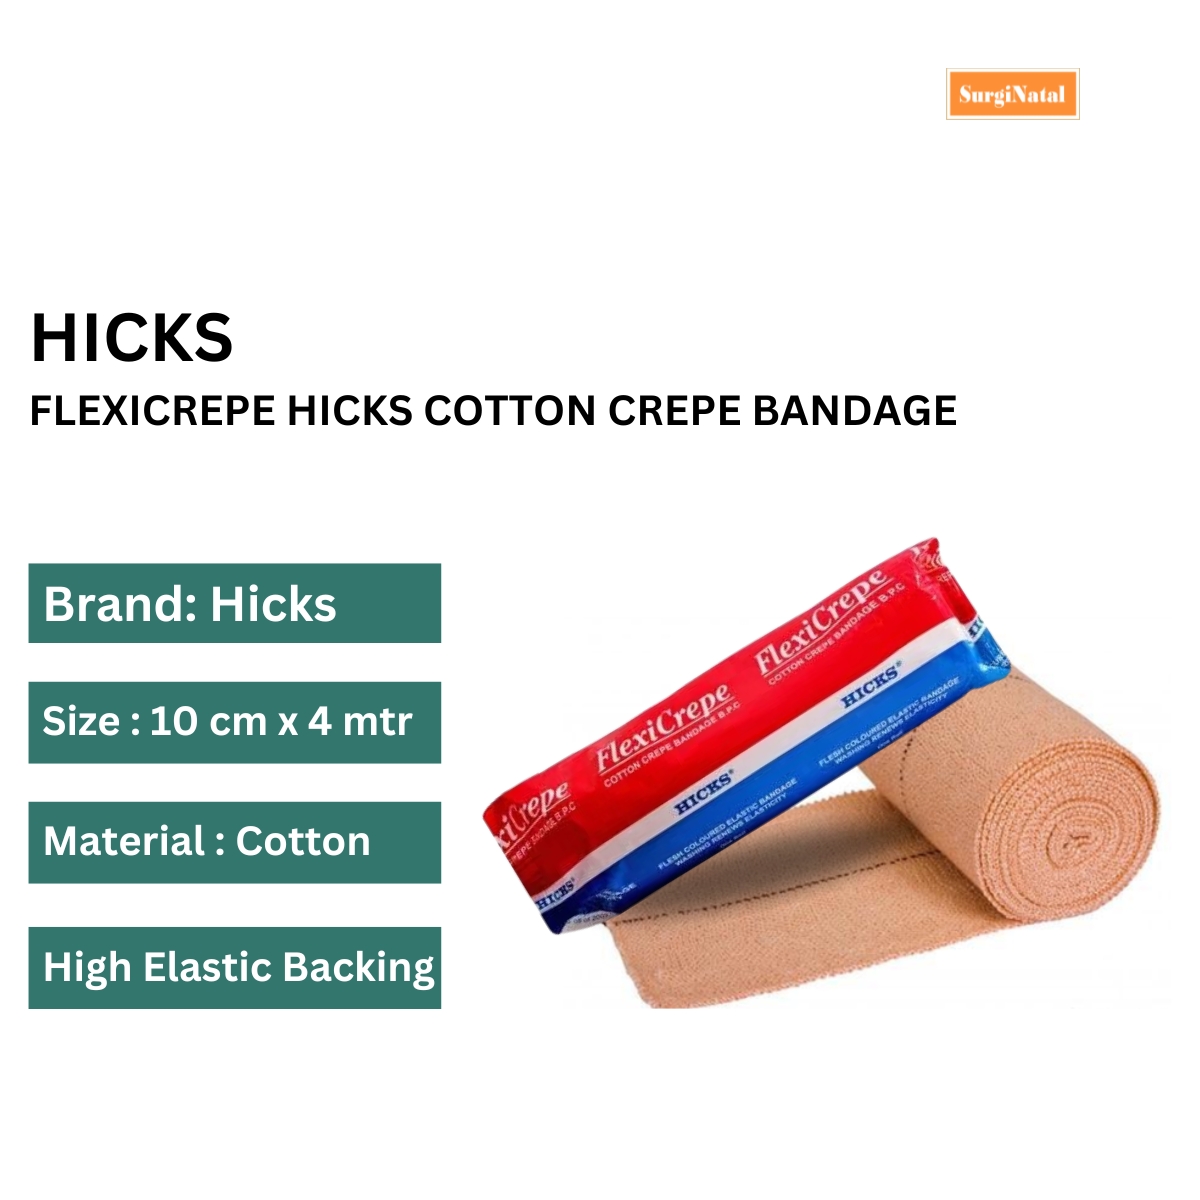 flexicrepe hicks cotton crepe bandage 10cm x 4mtr